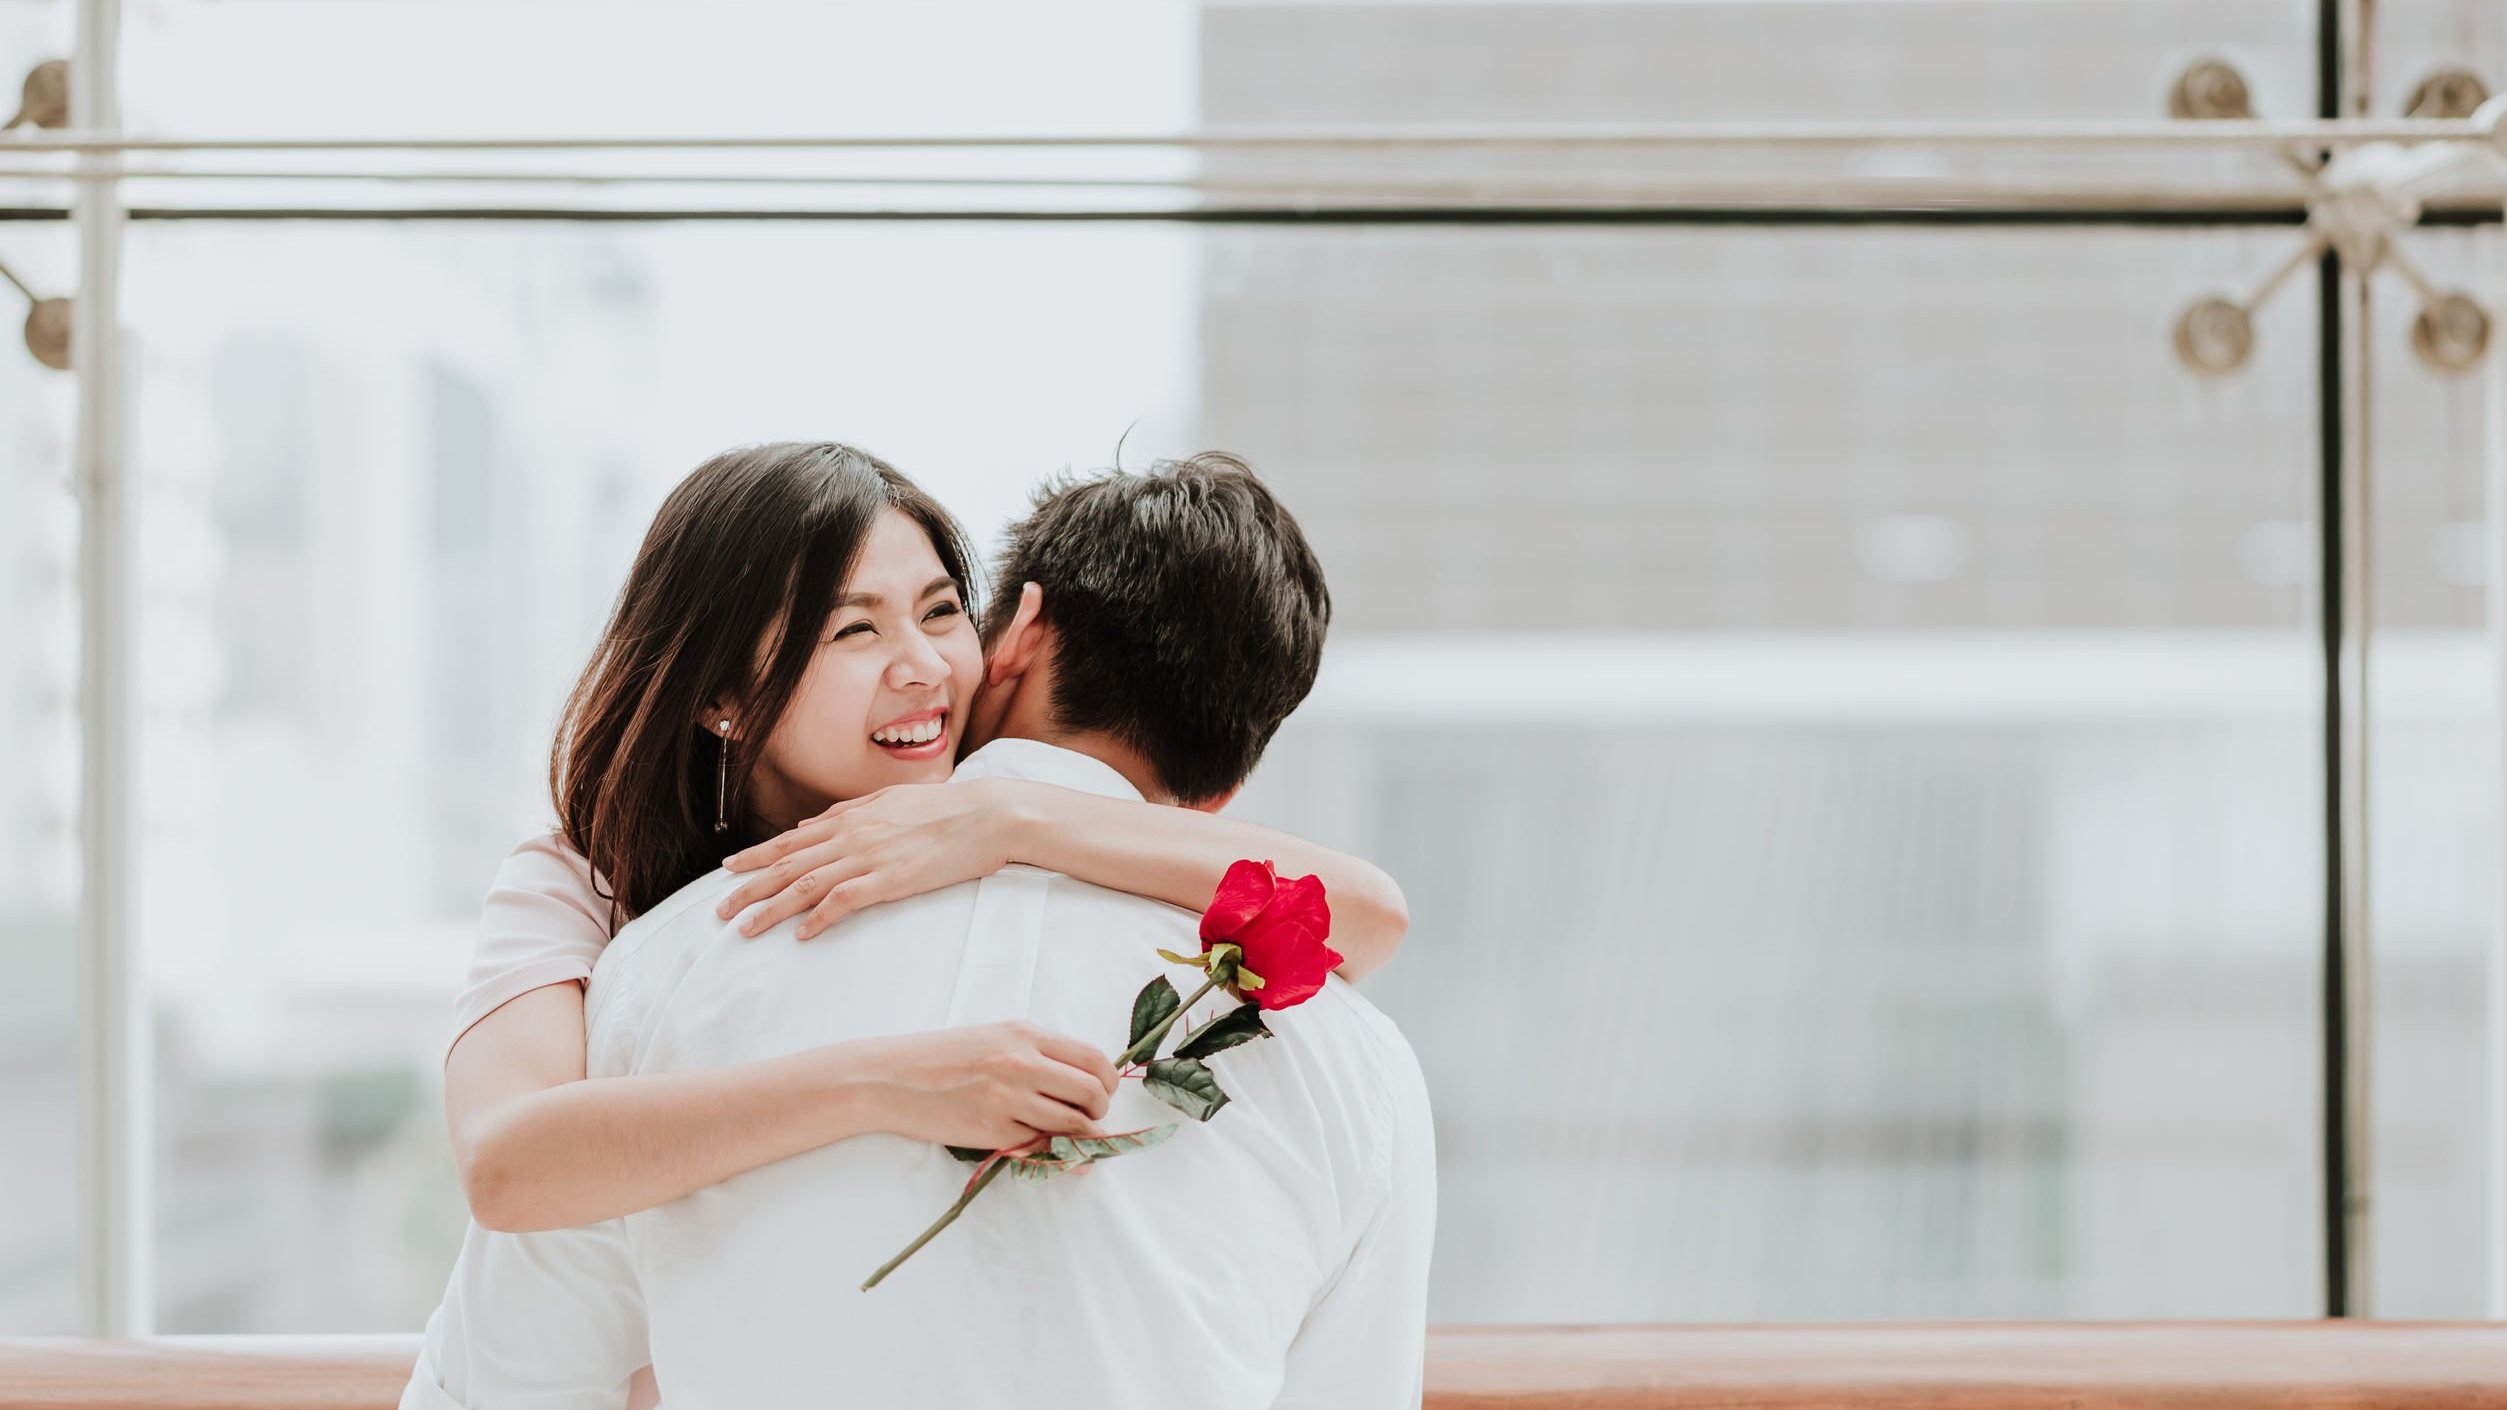 Mulher asiática e homem brancos se abraçando, a mulher segurando uma rosa vermelha e com expressão sorridente